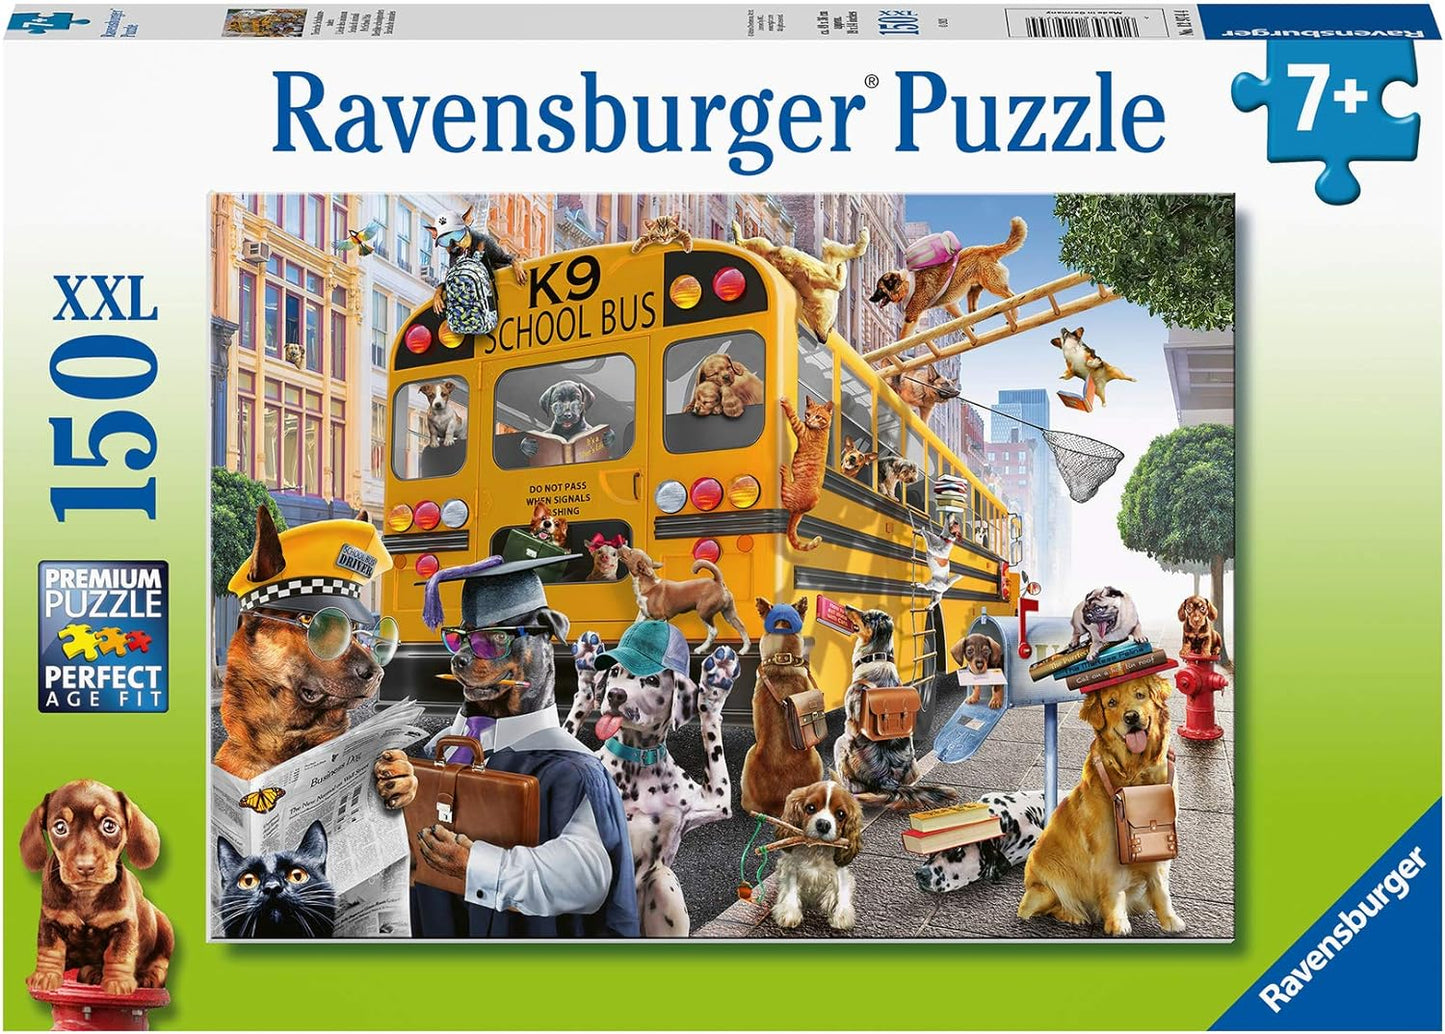 Ravensburger Puzzle 150pc